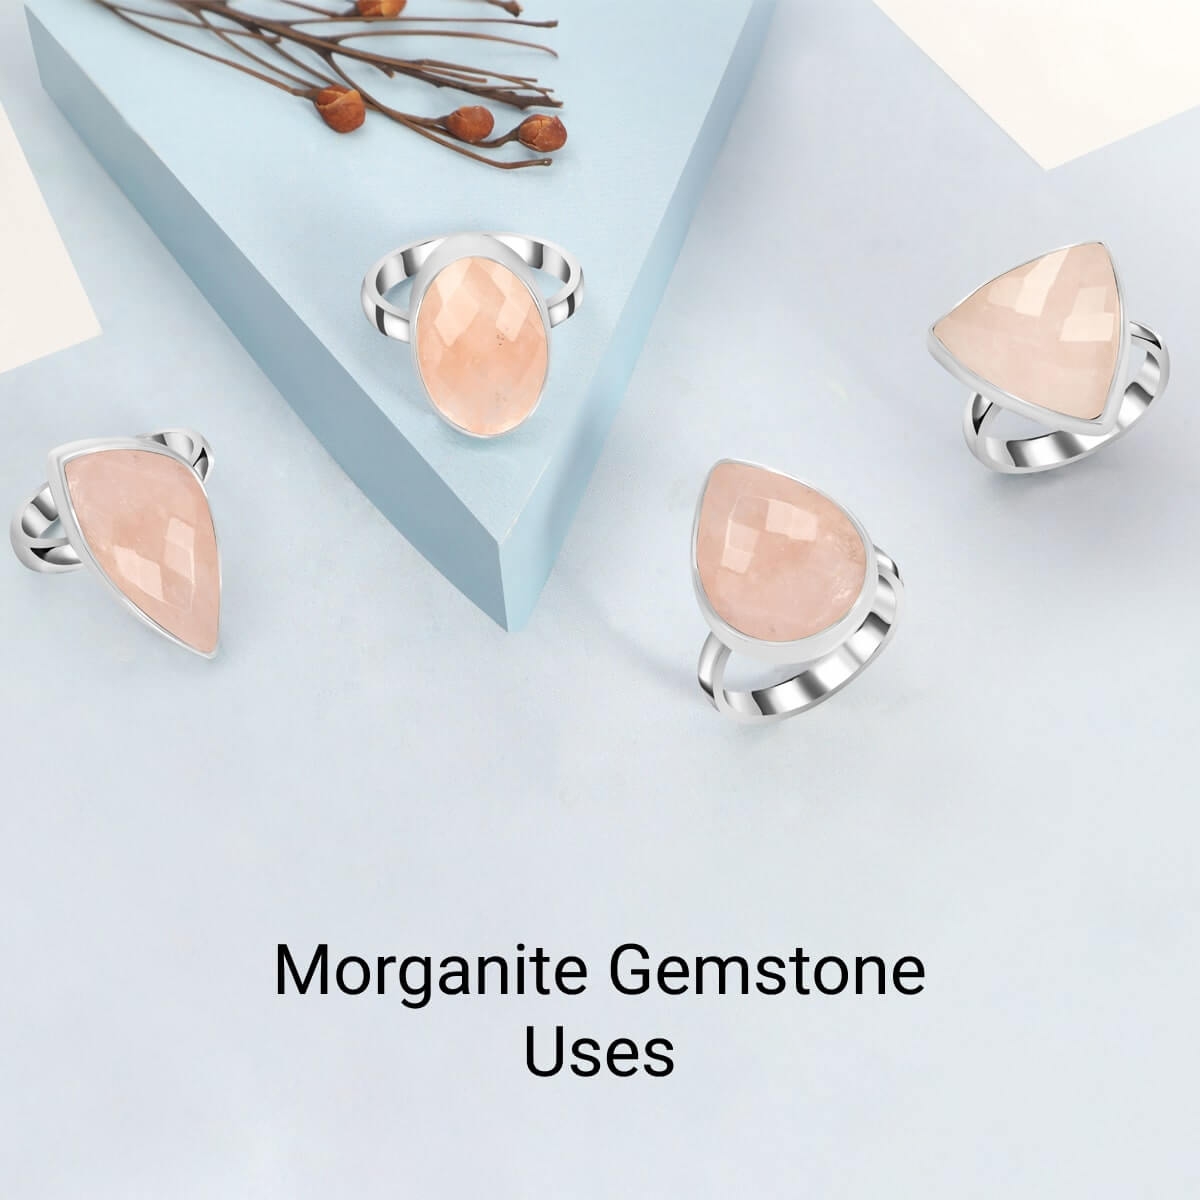 Uses of Morganite